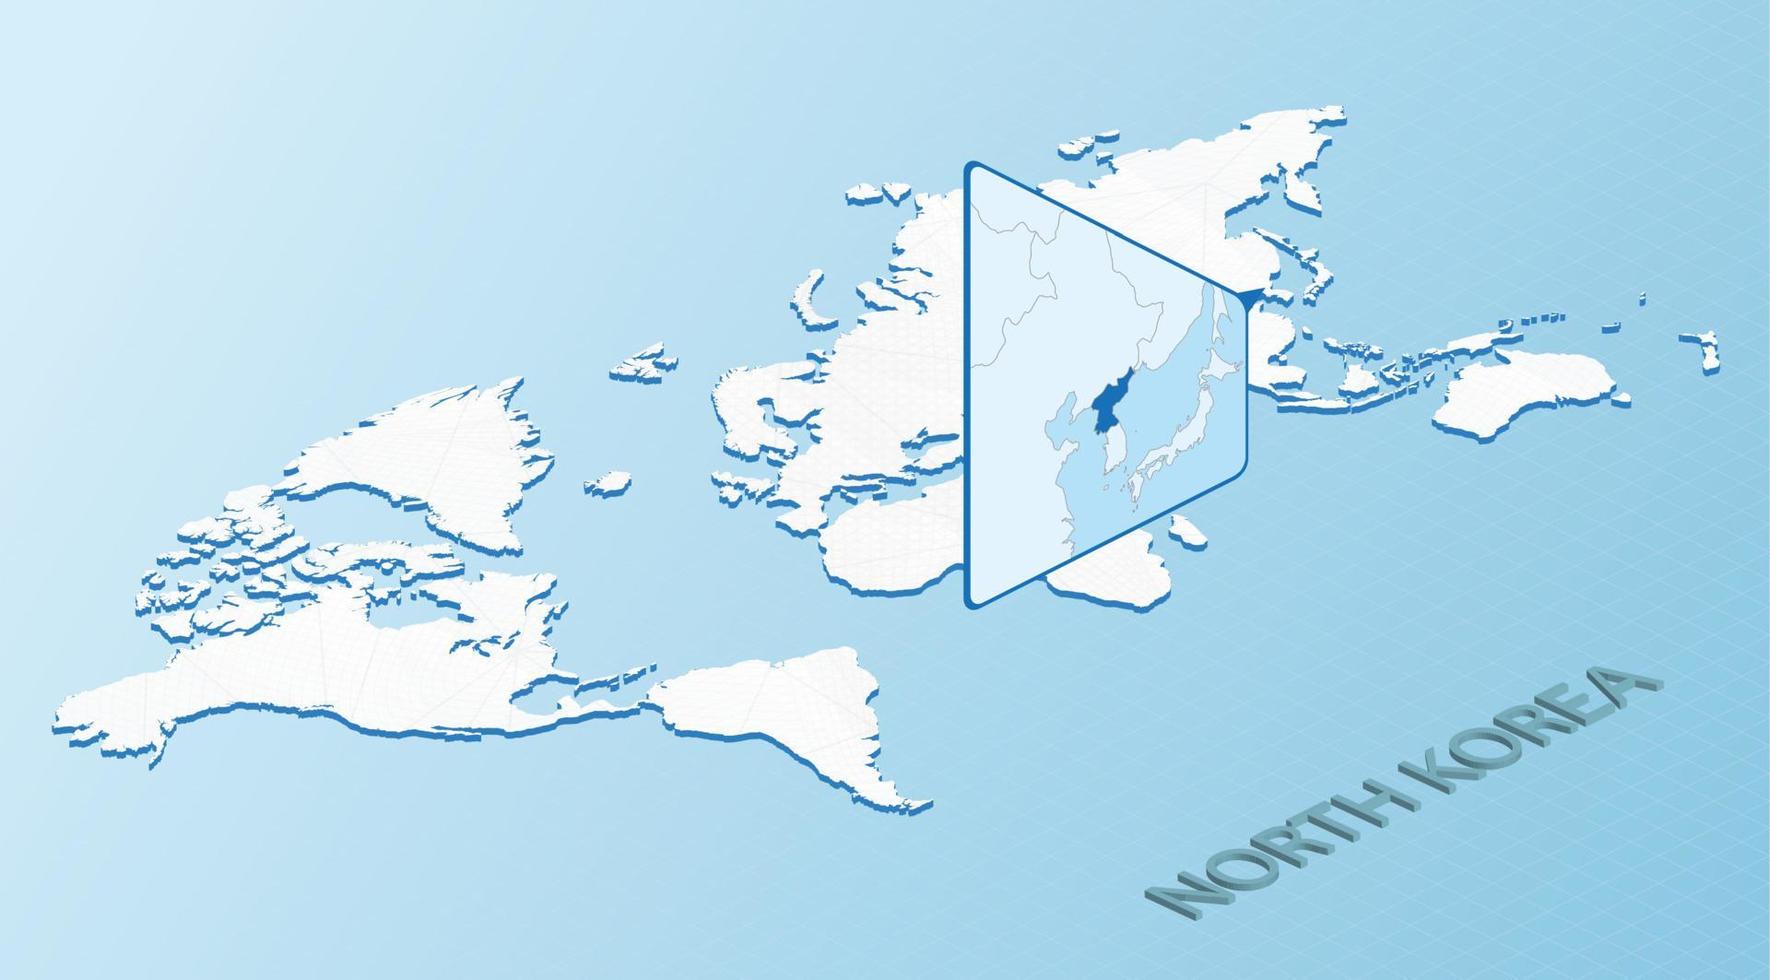 carte du monde en style isométrique avec carte détaillée de la corée du nord. carte bleu clair de la corée du nord avec carte du monde abstraite. vecteur